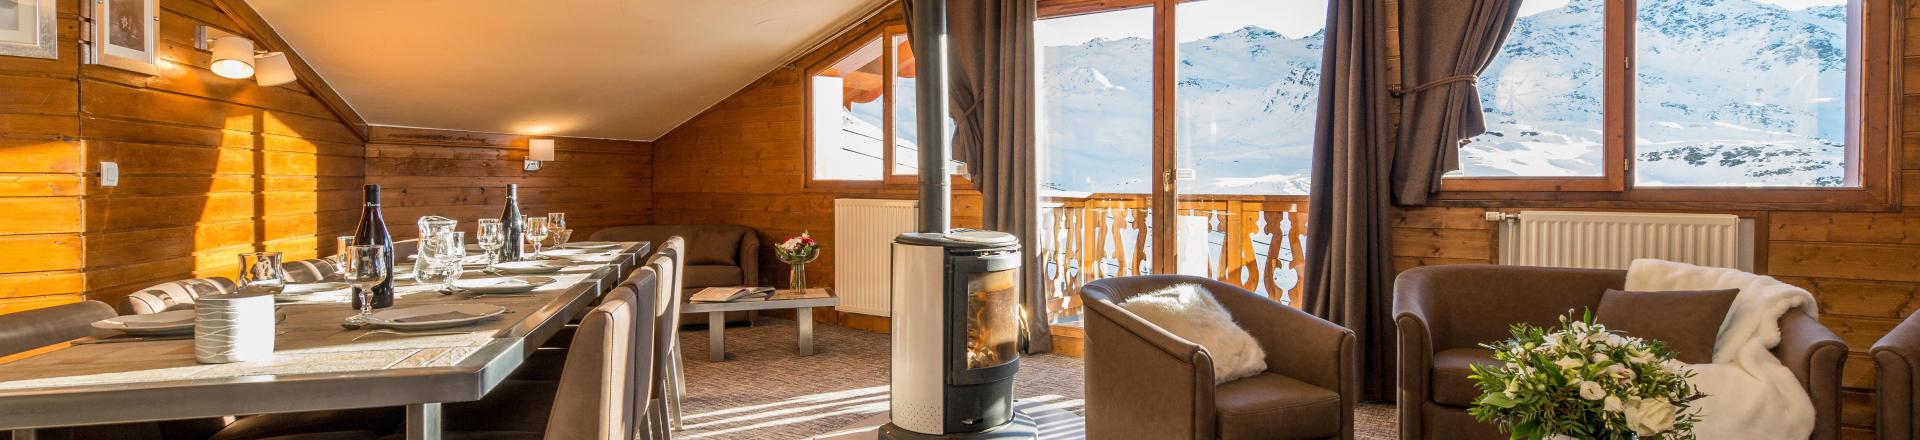 Location au ski Appartement 6 pièces 10-12 personnes (Grand Confort) - Chalet Val 2400 - Val Thorens - Séjour